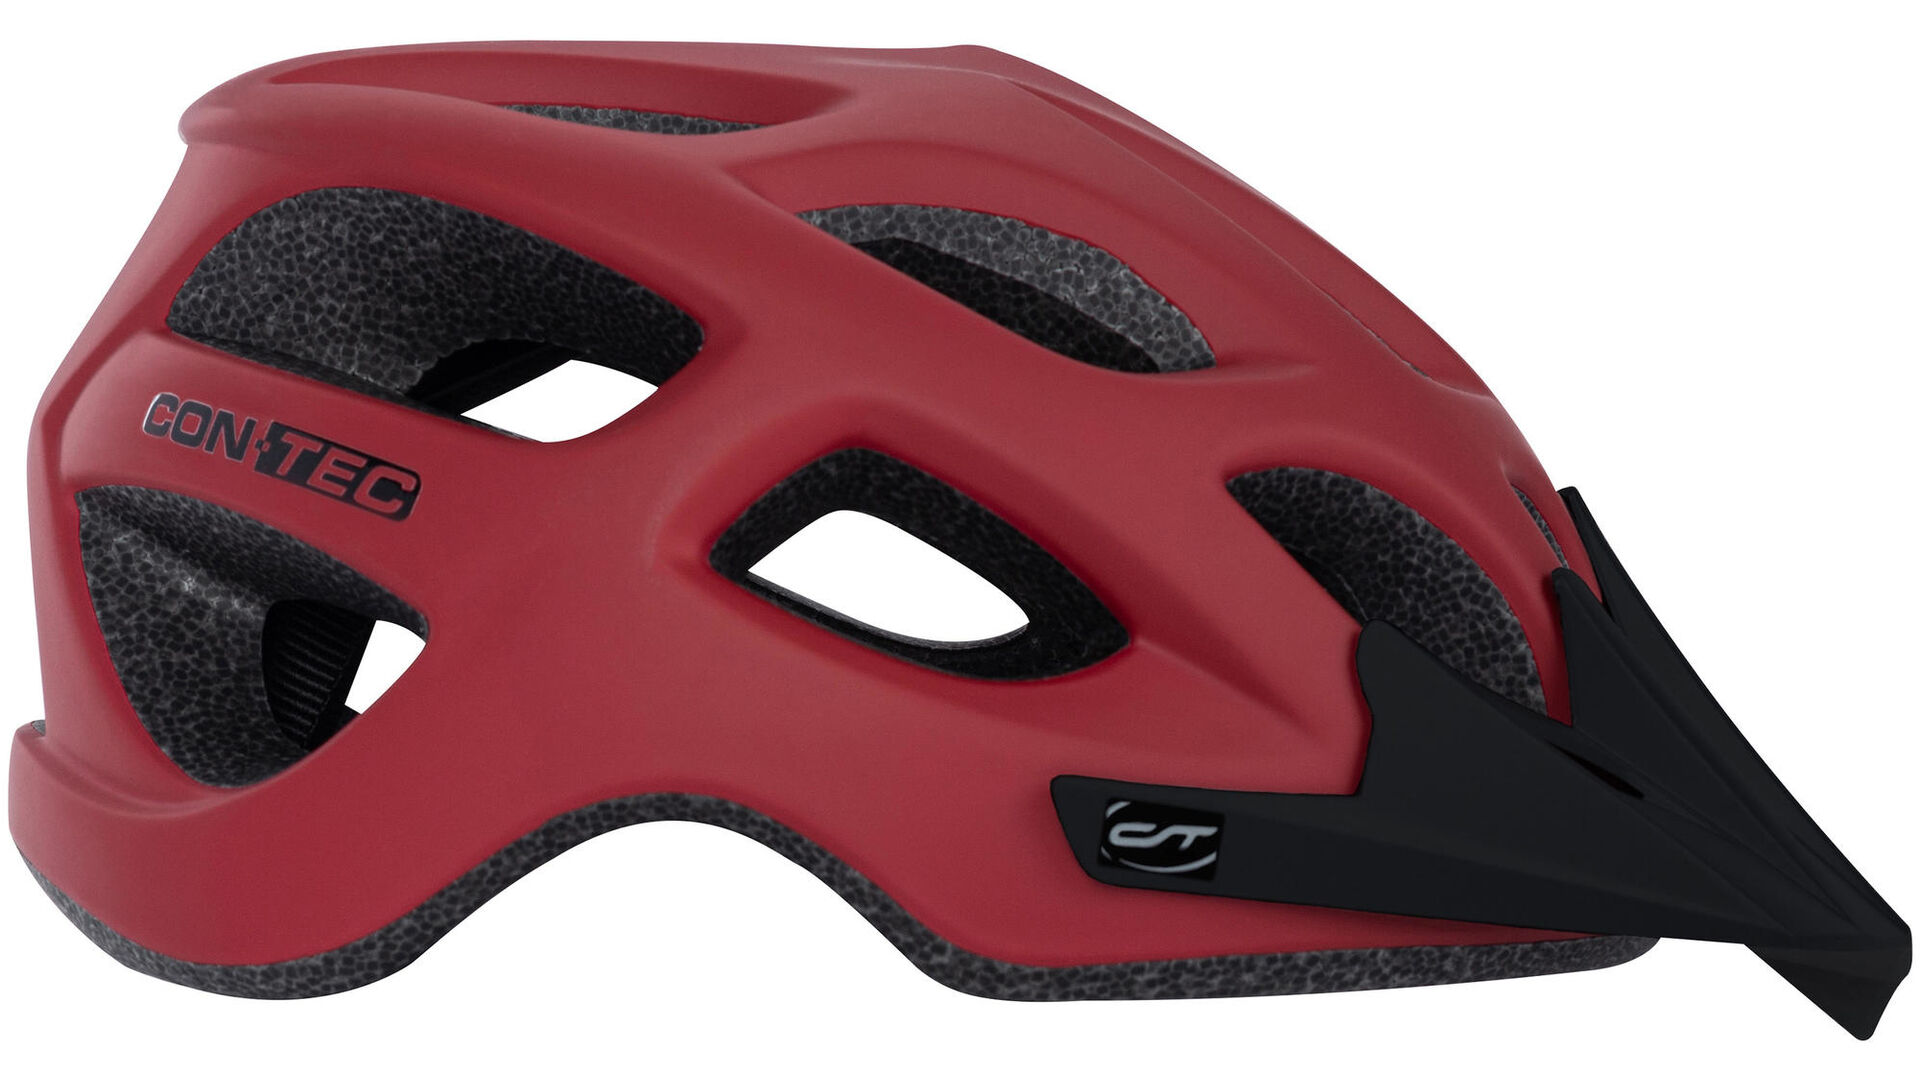 CONTEC MTB Rok | MTB helmets | Bike helmets | Accessories | Products CONTEC Parts